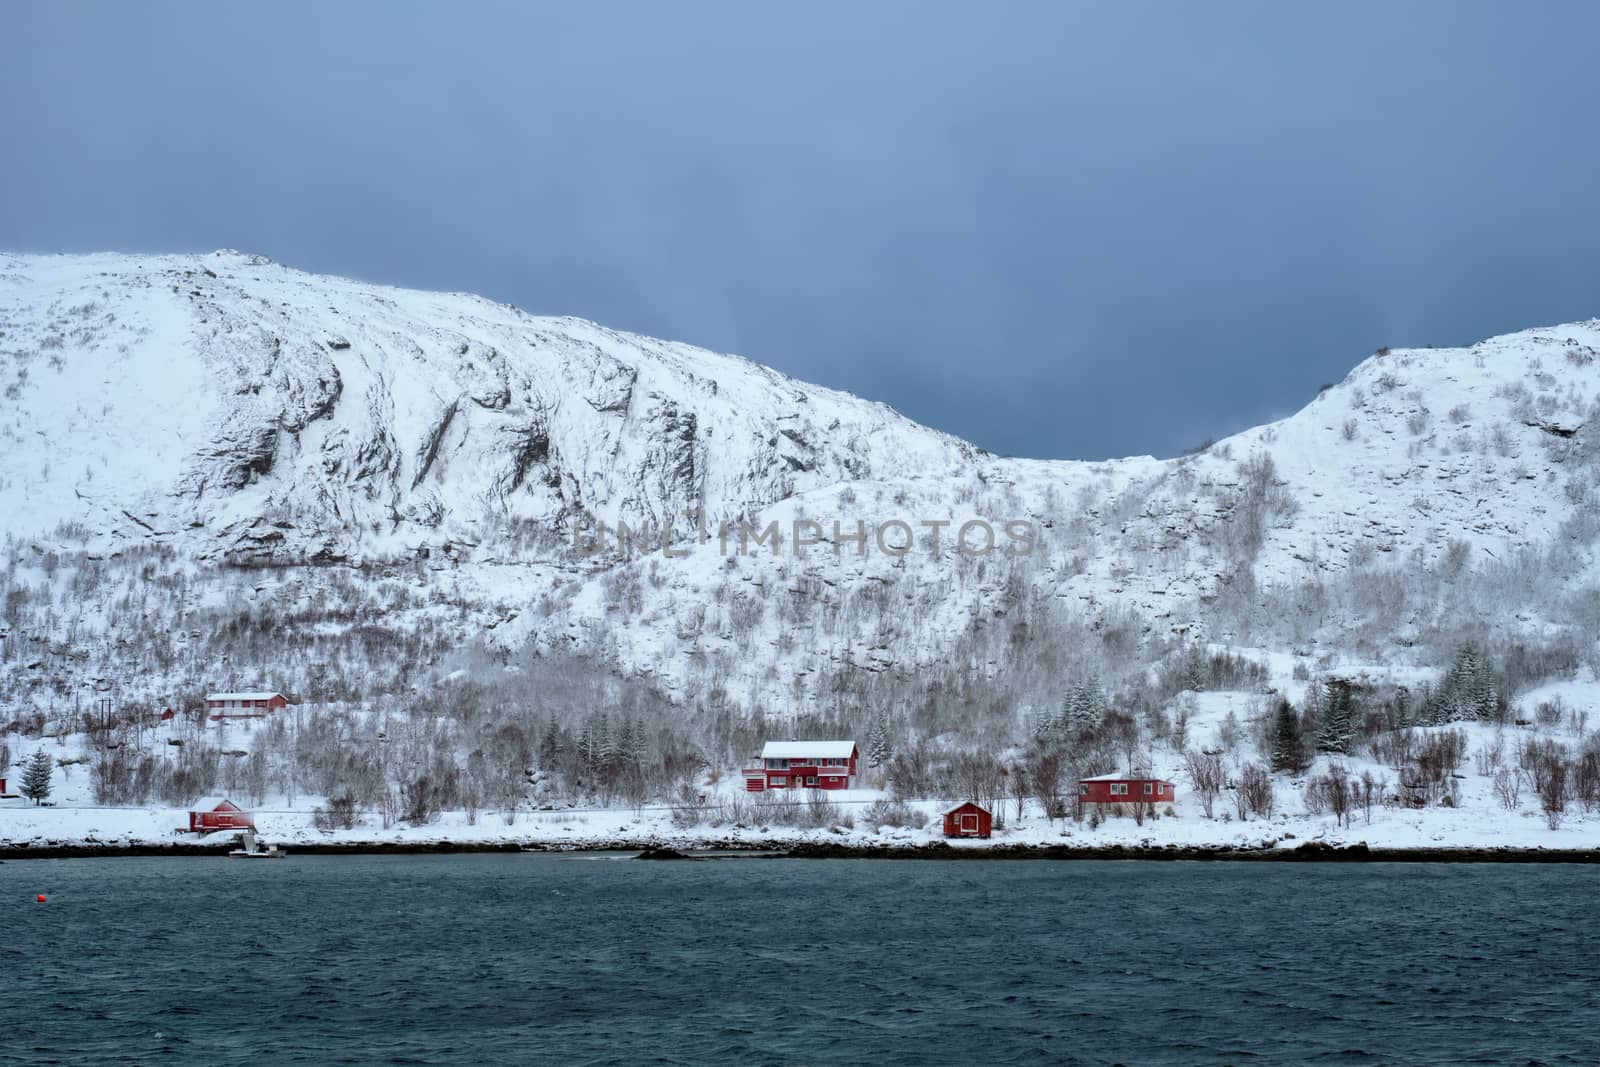 Rd rorbu houses in Norway in winter by dimol